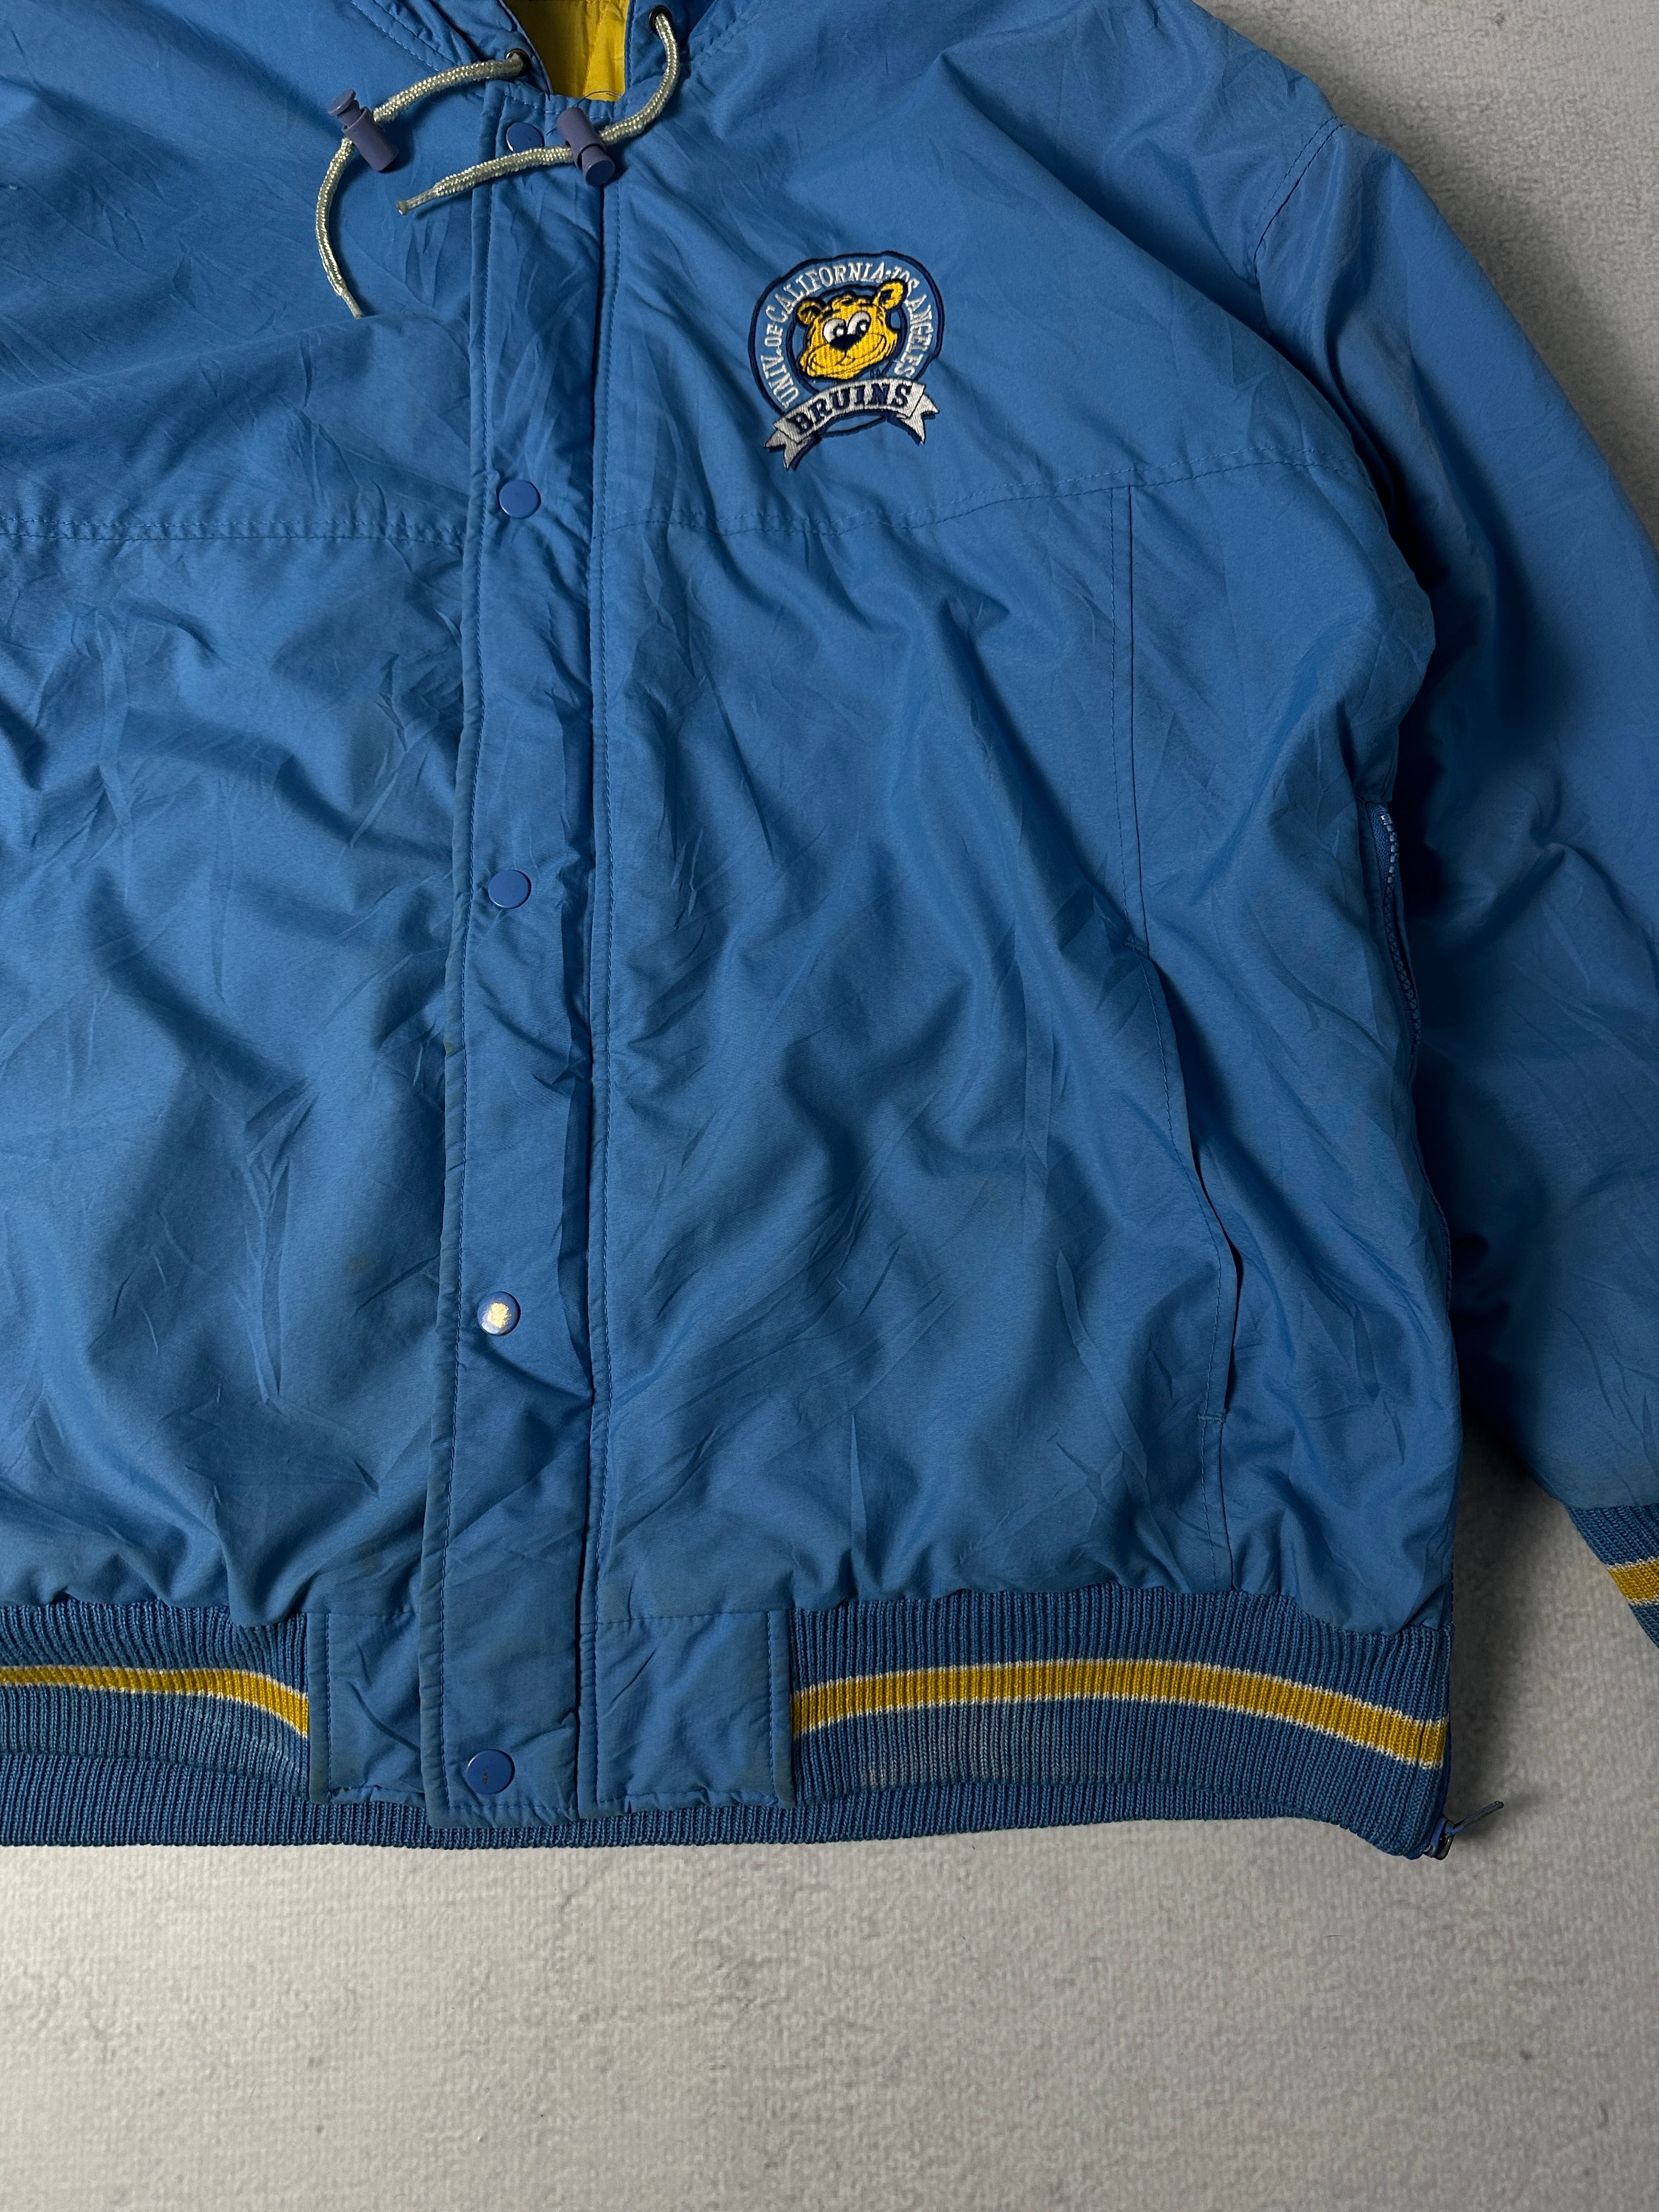 Vintage Starter UCLA Bruins Insulated Jacket - Men's Large